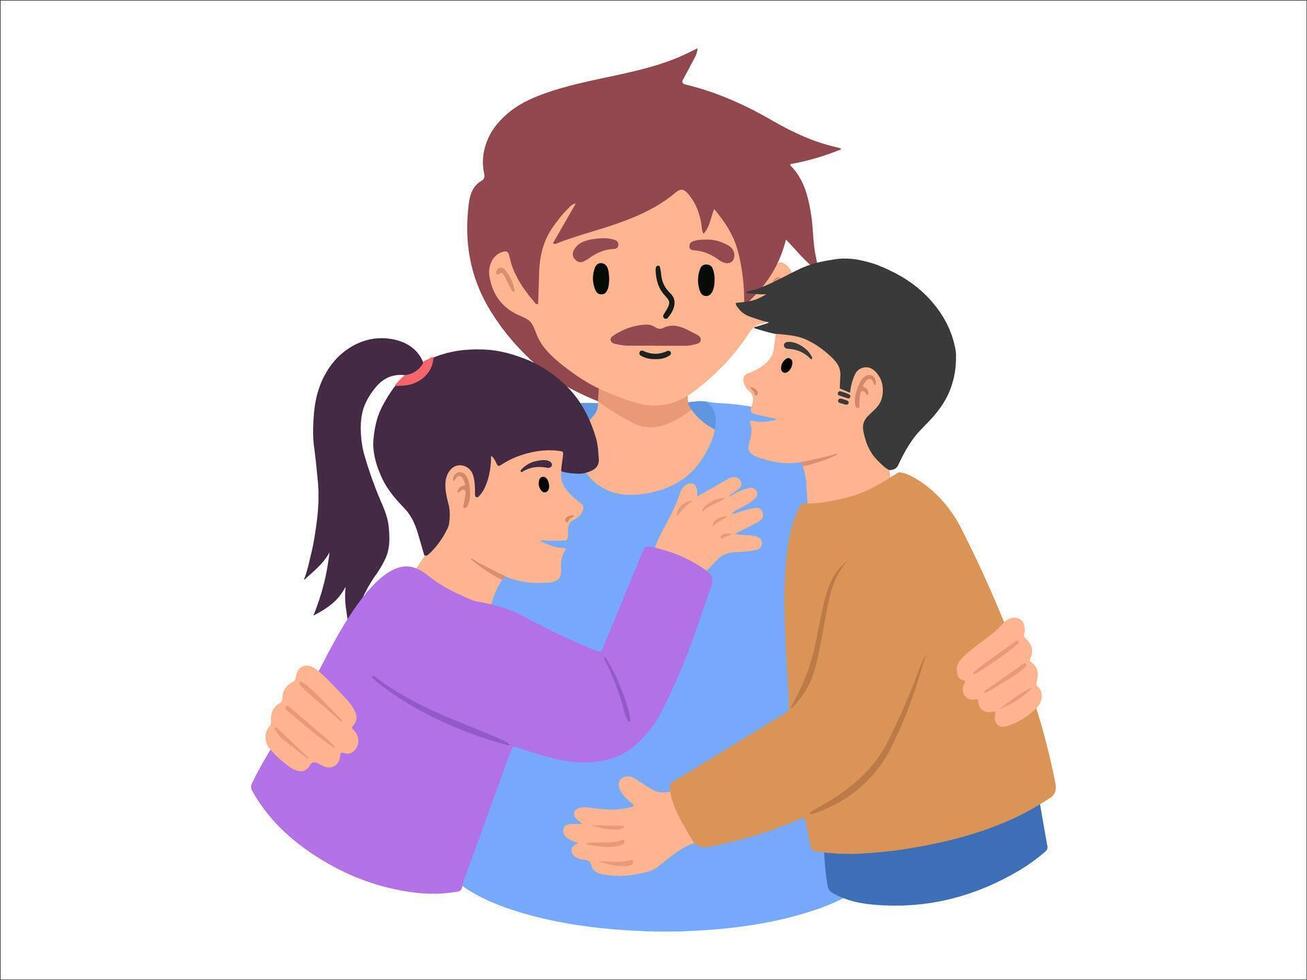 padre con hijo y hija o avatar icono ilustración vector